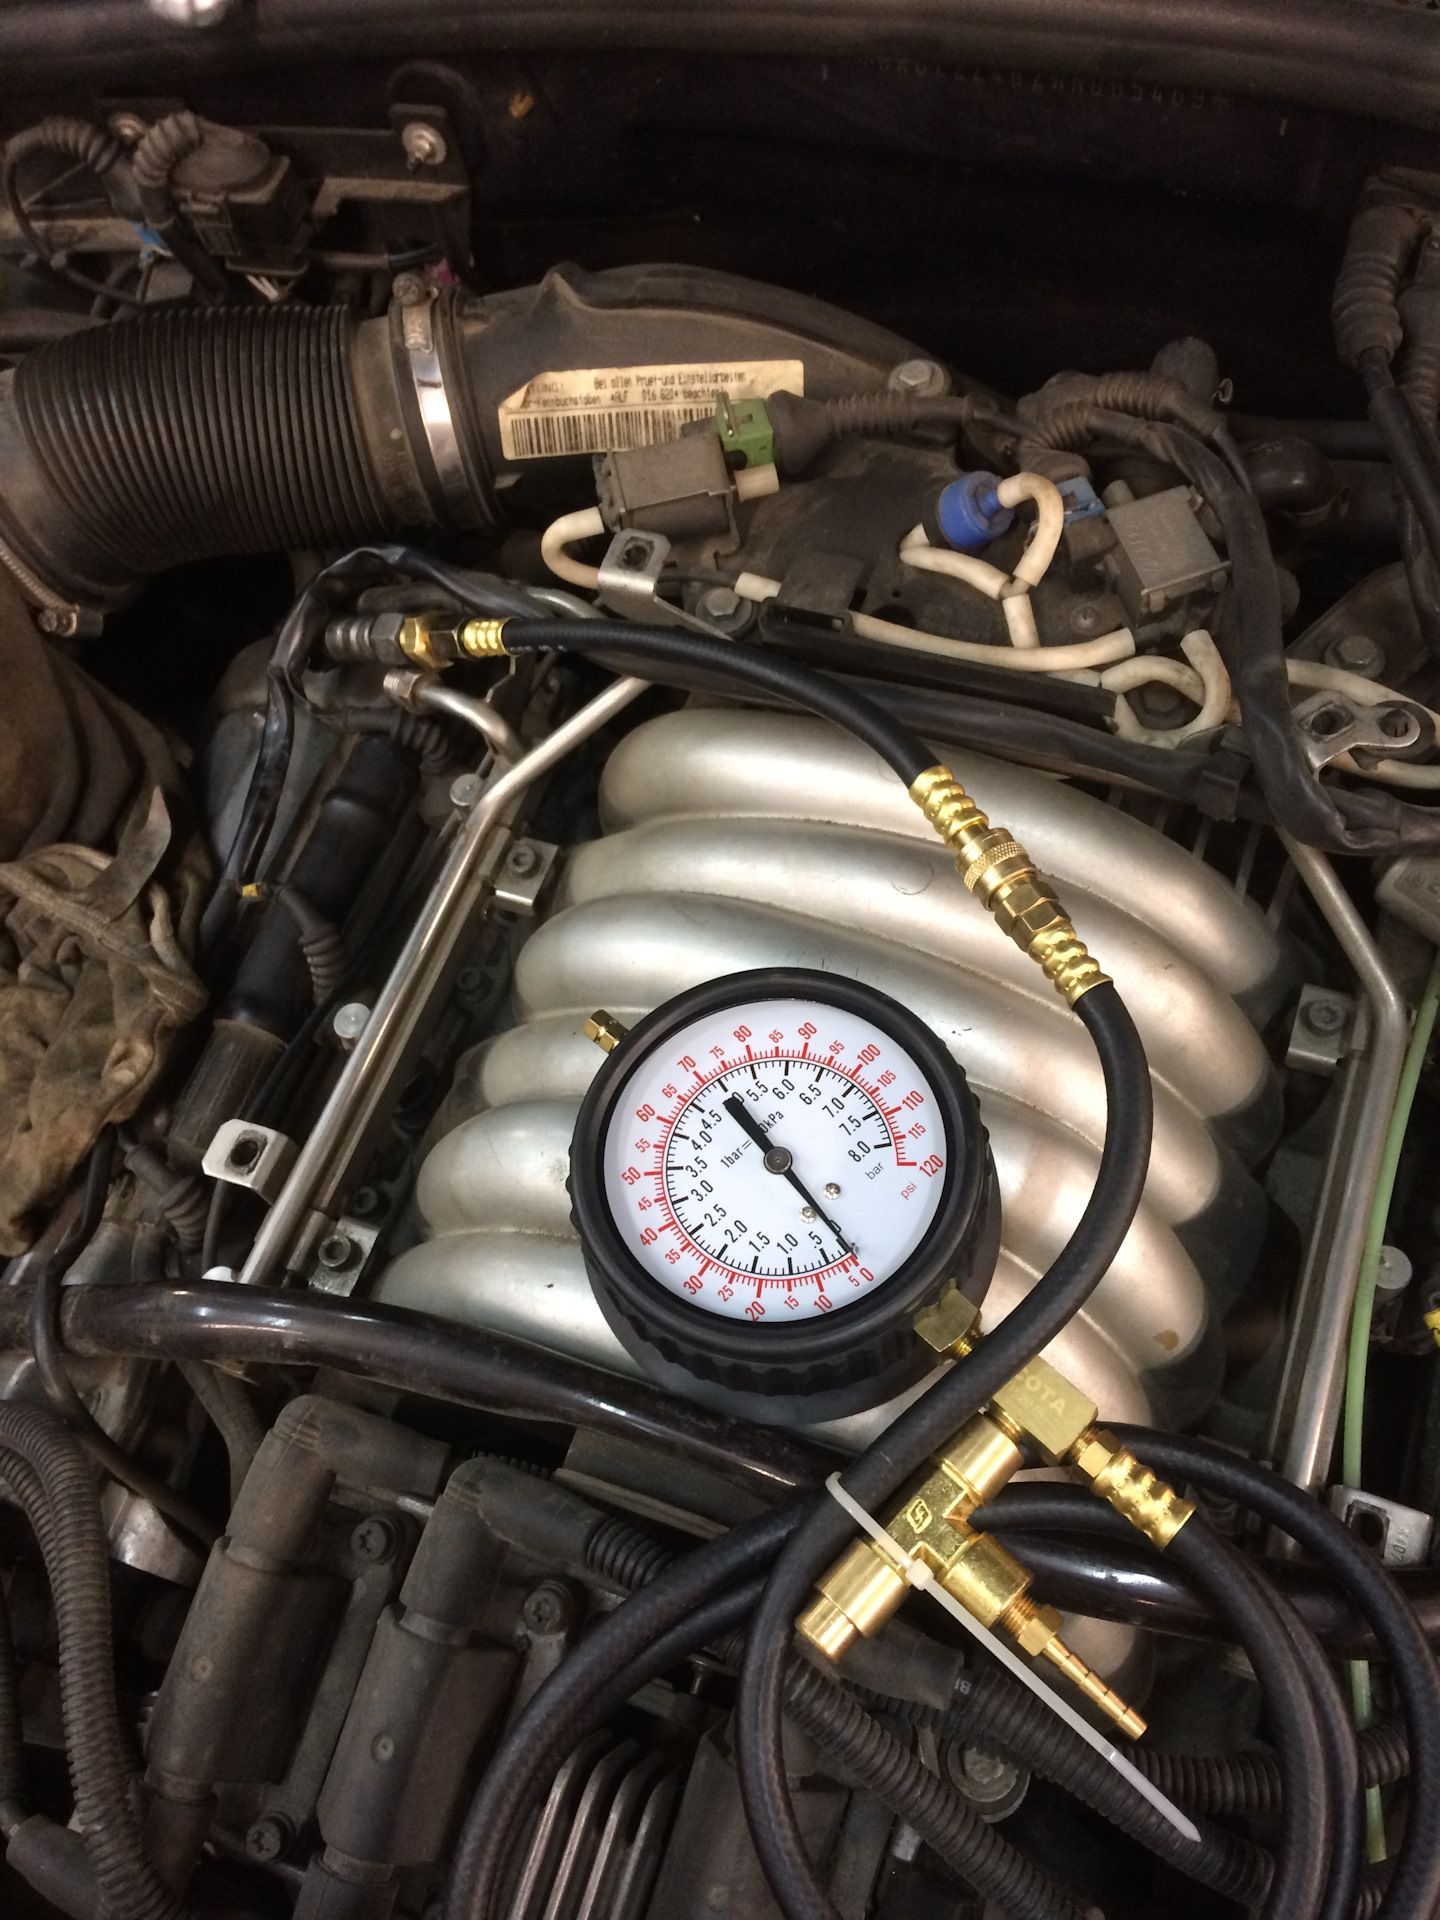 Давление масла fsi. Регулятора давления топлива Audi a6 c5 2.7. Замерить давление топлива Ауди 100 с4. Audi a6 2,8 v6 замер давления топлива. РДТ Ауди а6 с5 2.4.